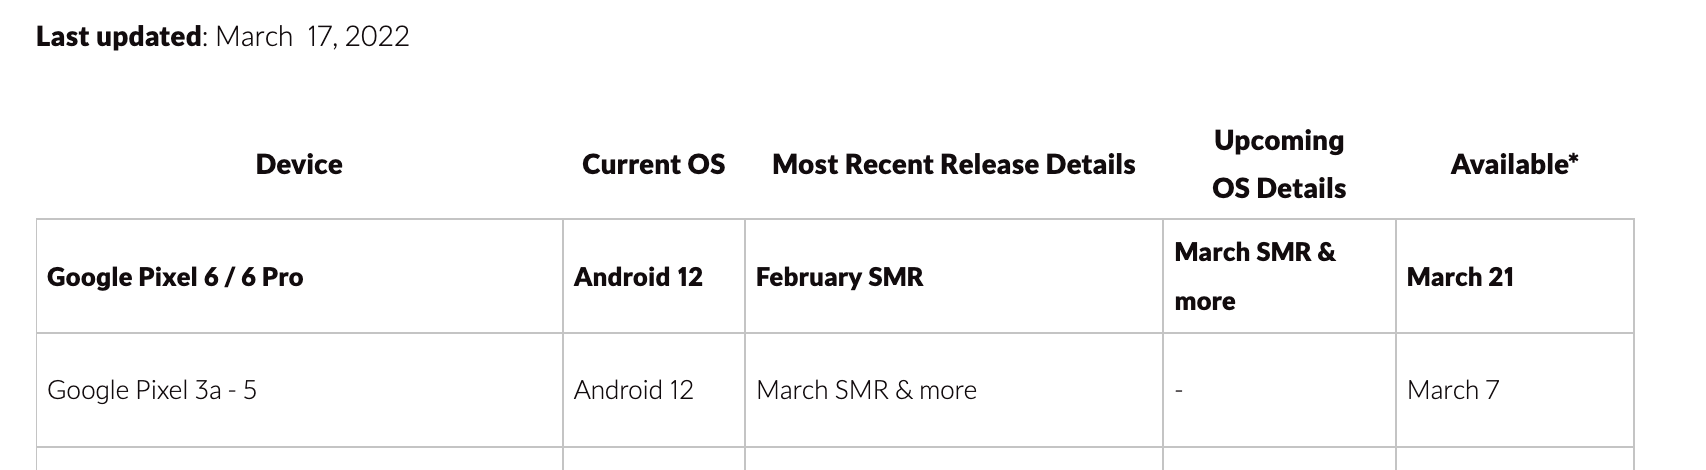 El próximo parche para Pixel 6 y 6 Pro podría estar disponible el 21 de marzo